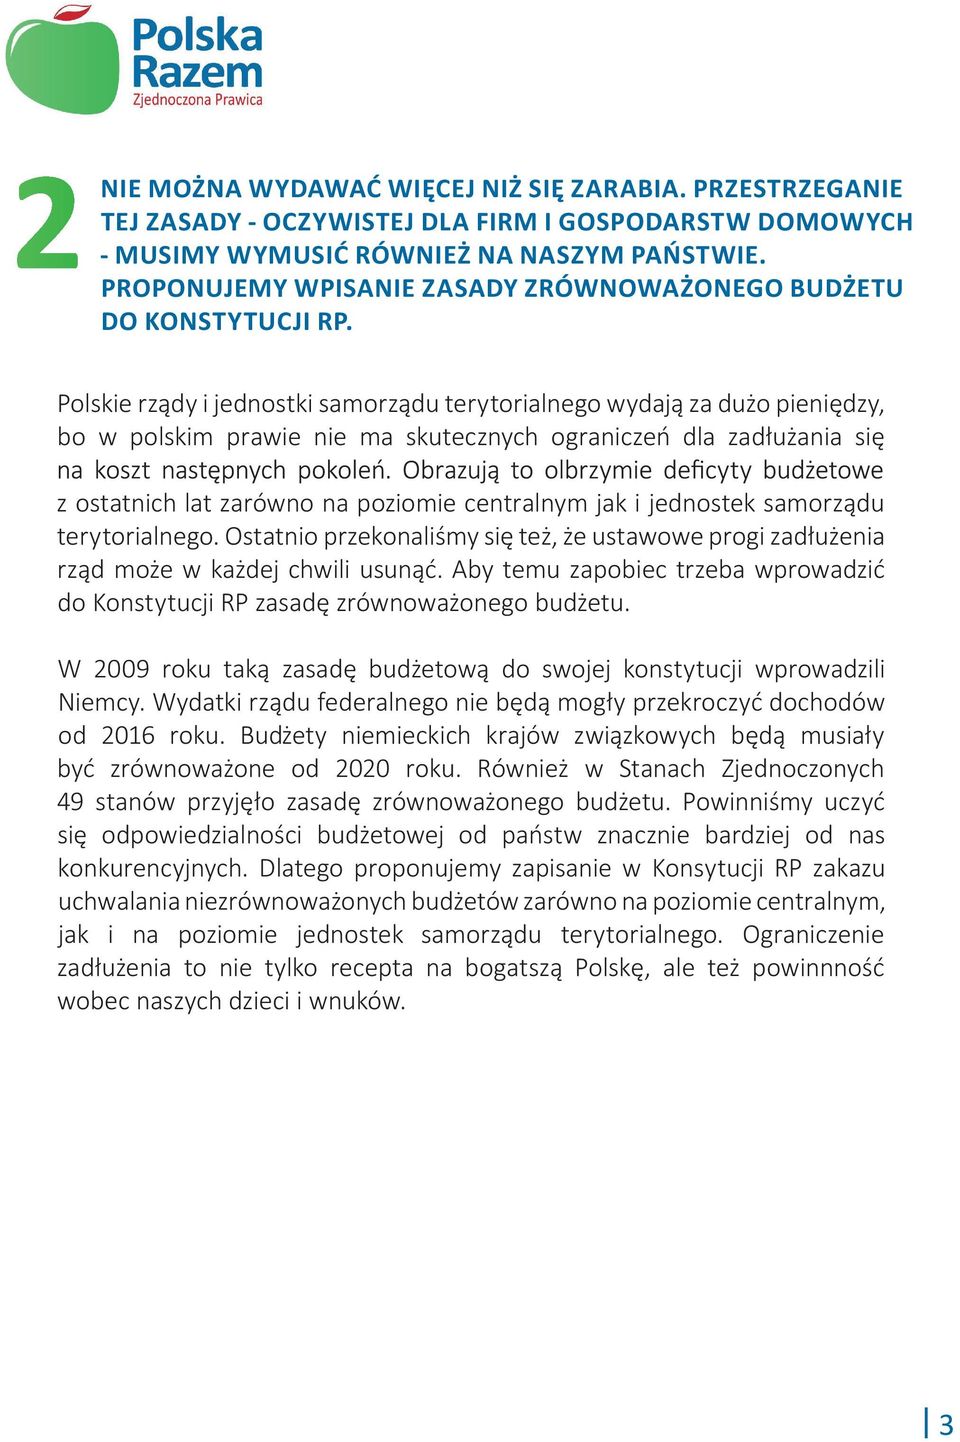 Polskie rządy i jednostki samorządu terytorialnego wydają za dużo pieniędzy, bo w polskim prawie nie ma skutecznych ograniczeń dla zadłużania się z ostatnich lat zarówno na poziomie centralnym jak i